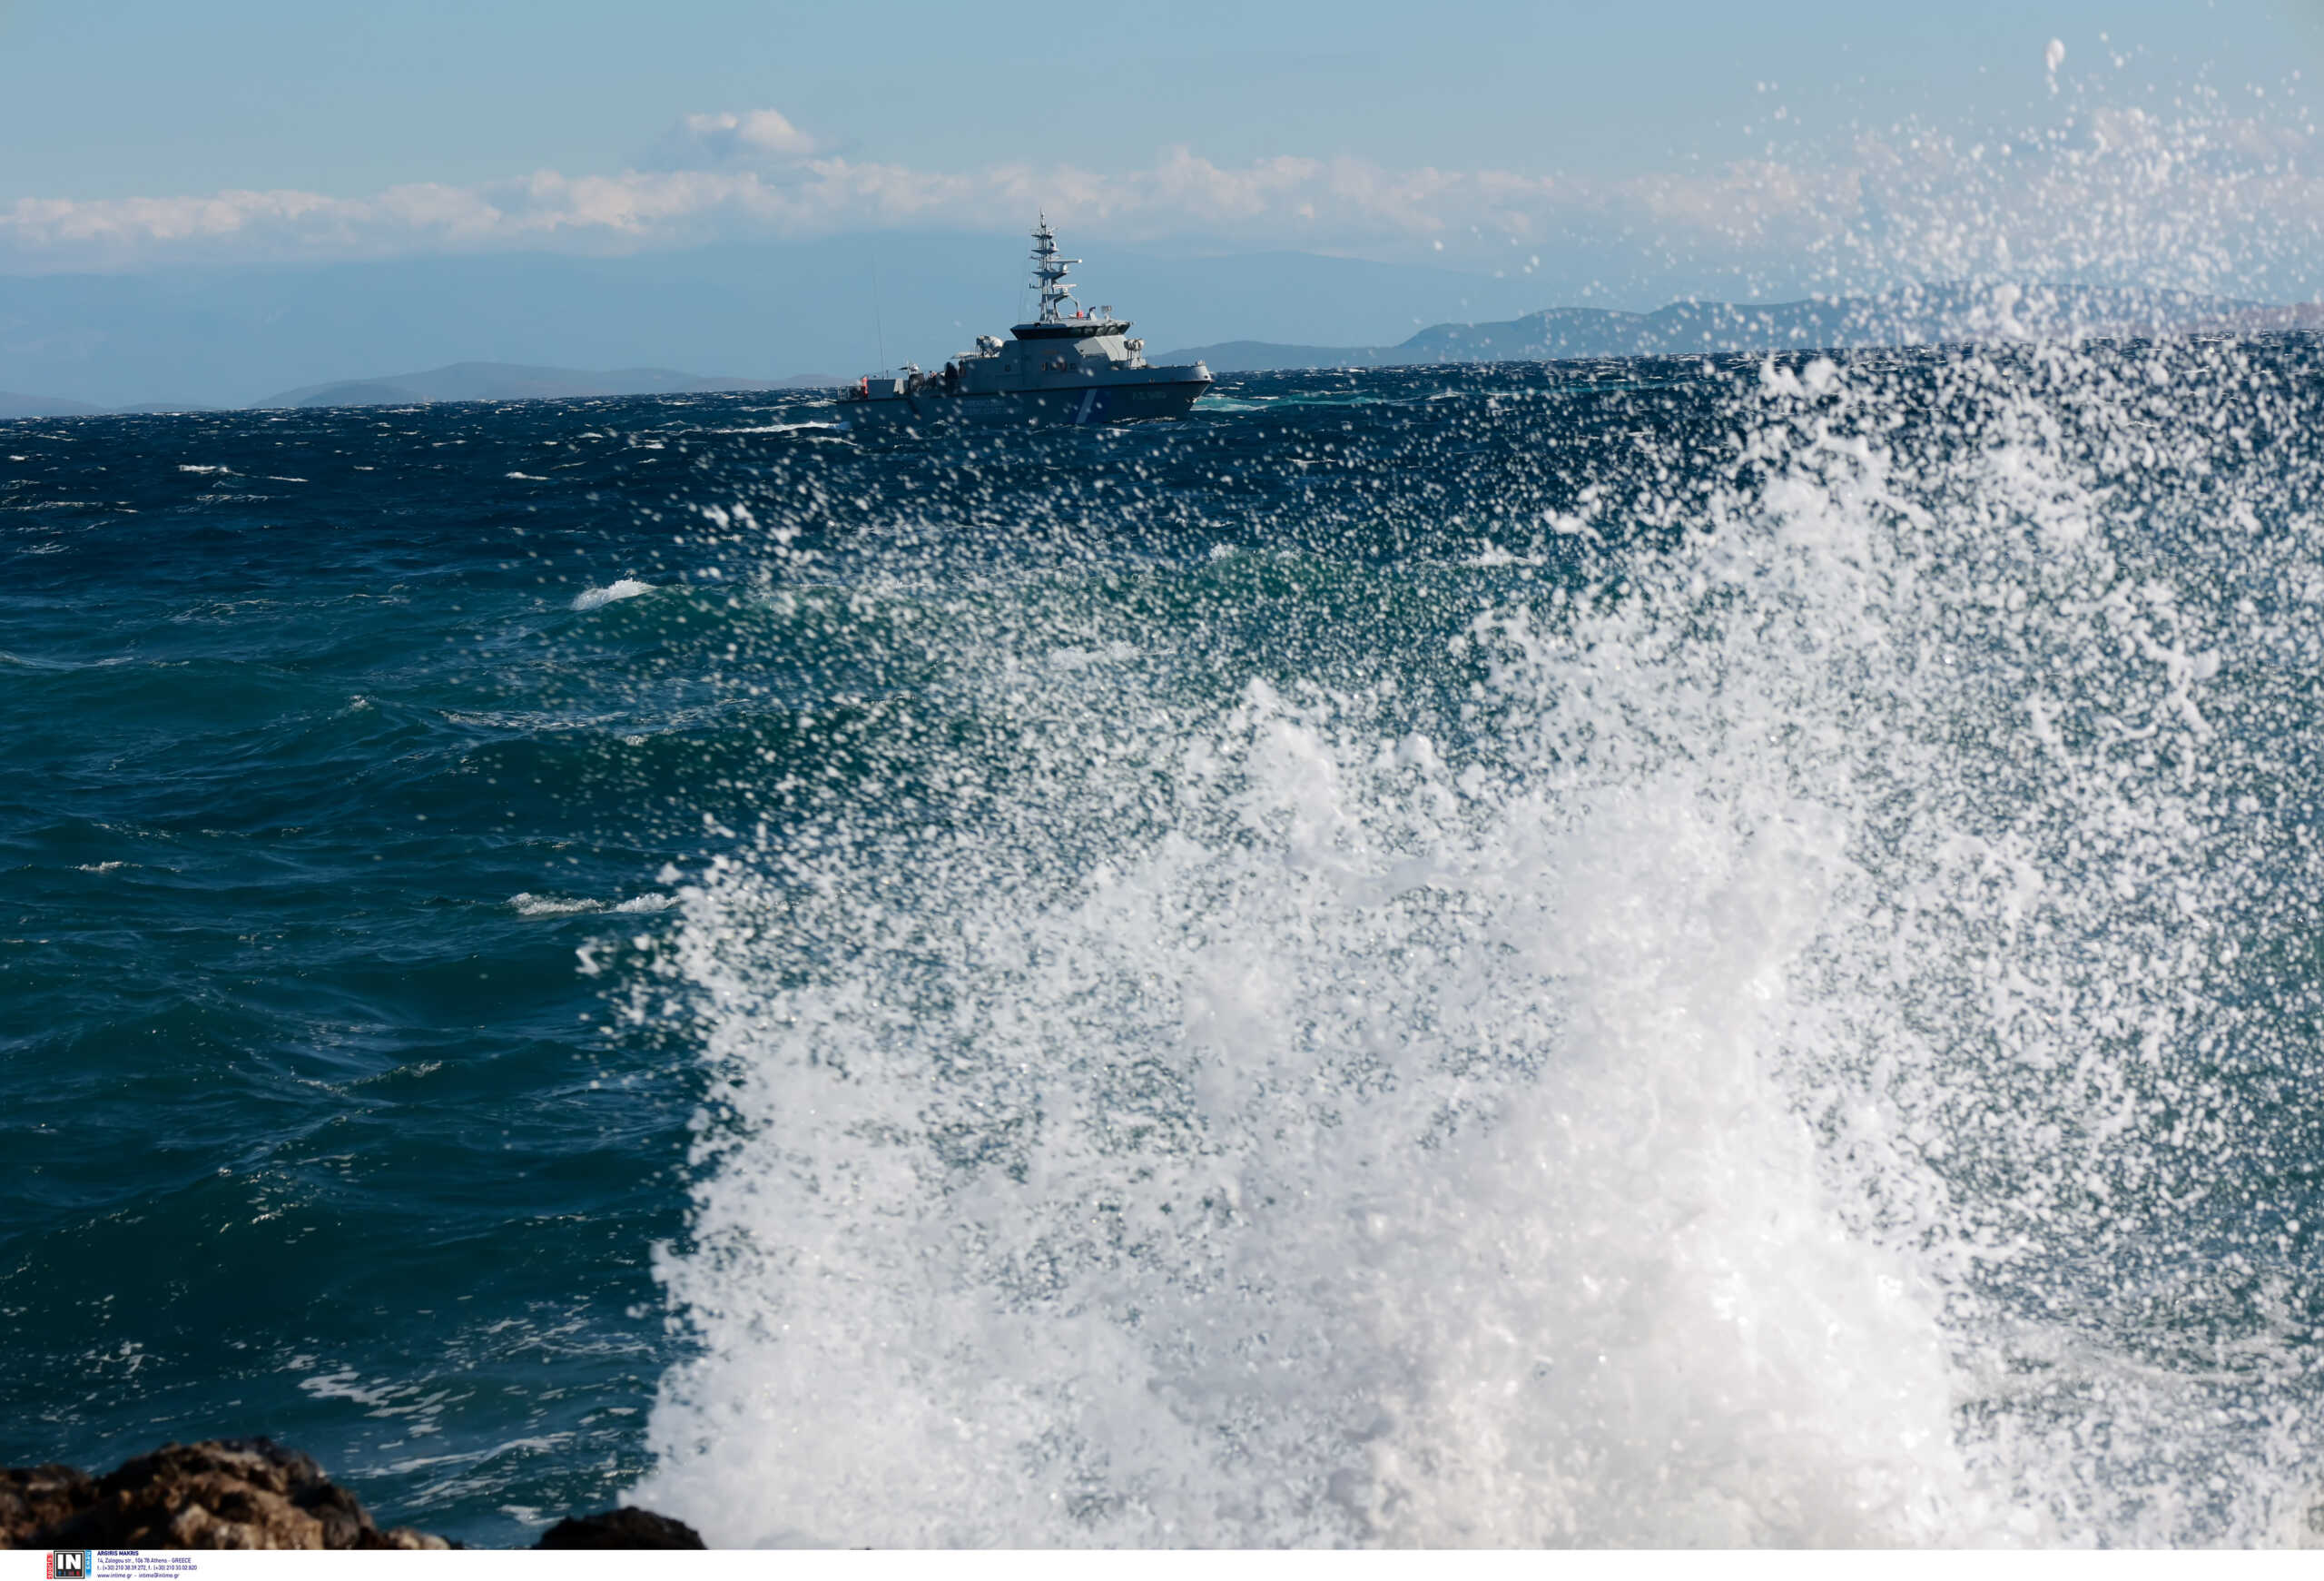 Κάρπαθος: Εντοπίστηκε σκάφος με μετανάστες βορειοδυτικά του νησιού